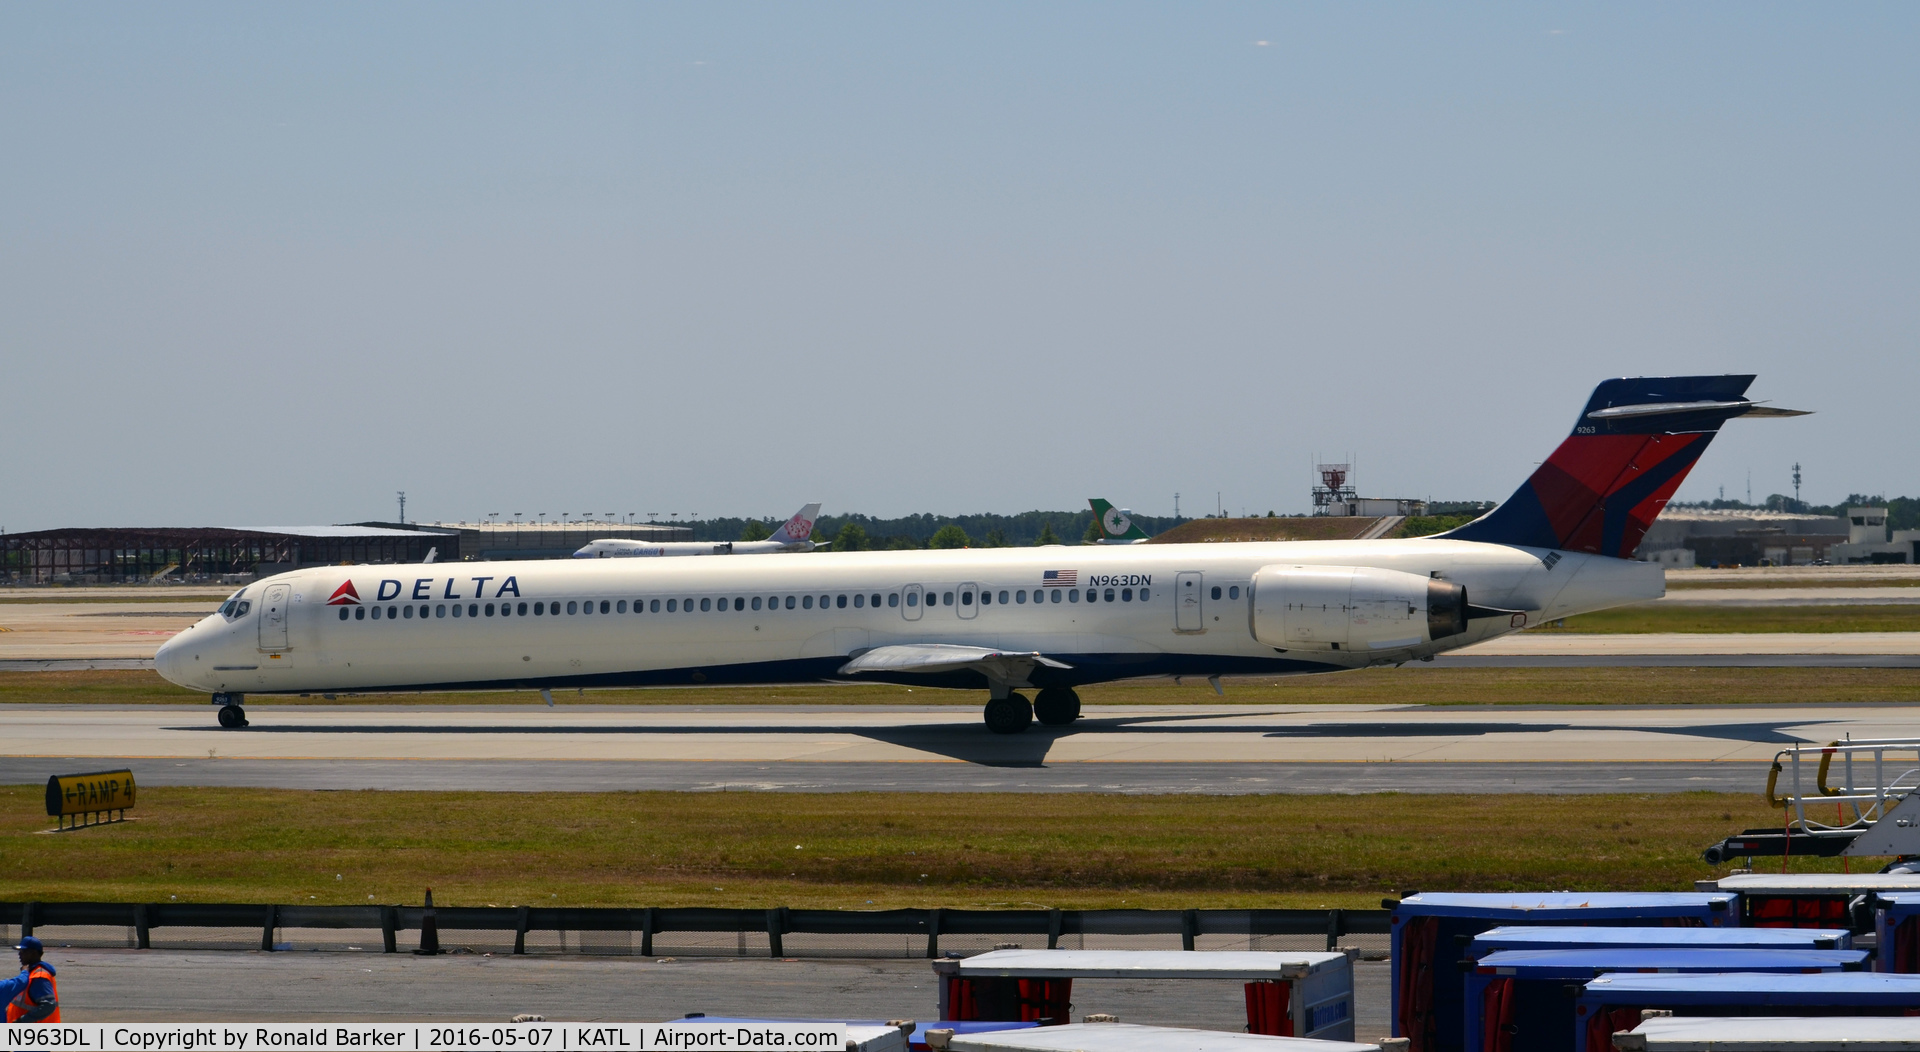 N963DL, 1990 McDonnell Douglas MD-88 C/N 49982, Taxi Atlanta